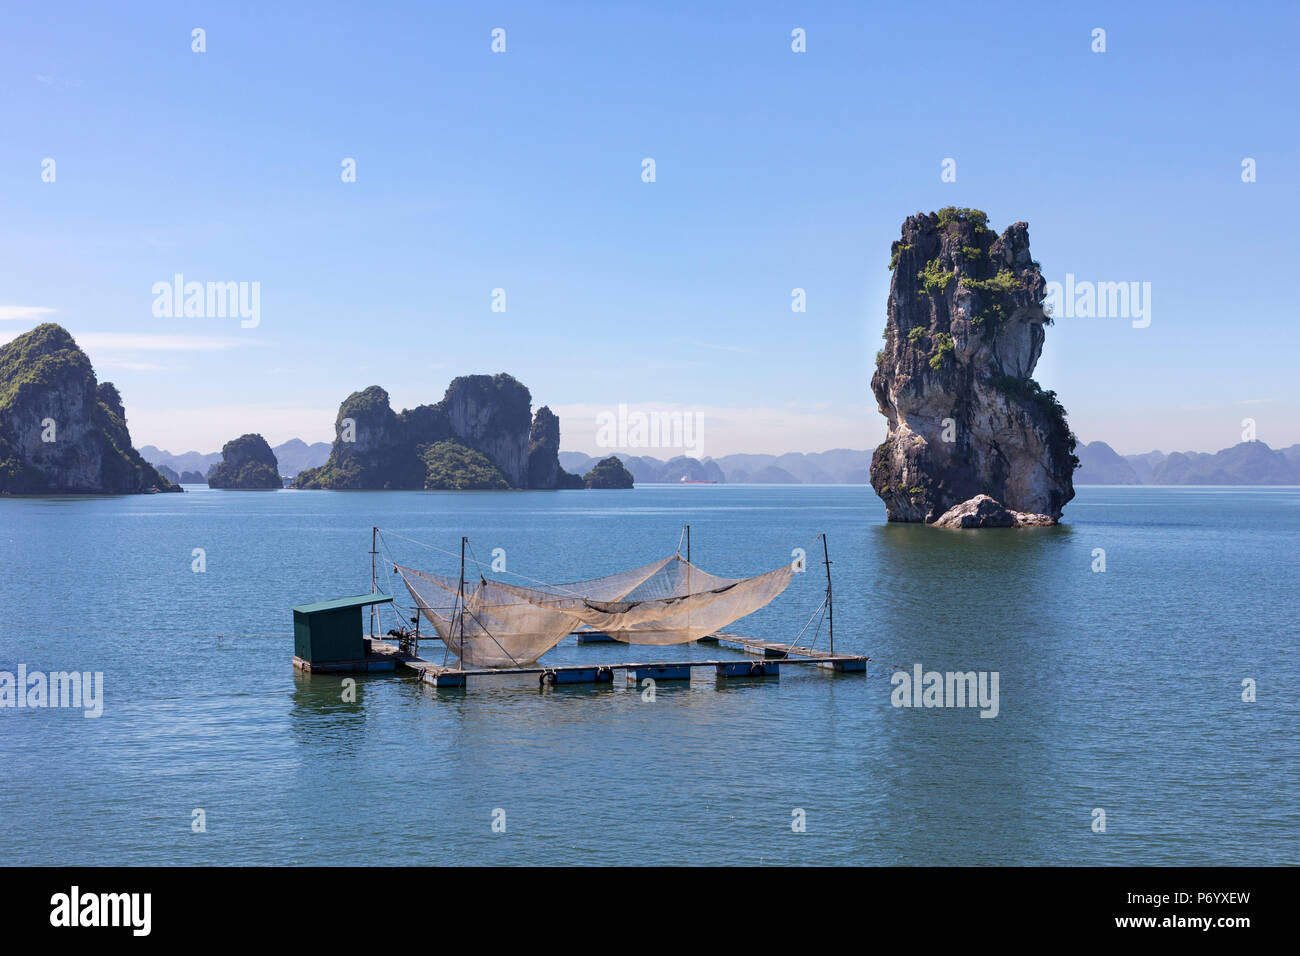 Filets de pêche sur un radeau en face de rochers karstiques, la baie d'Halong, Province de Quang Ninh, Vietnam, Asie du Sud-Est, du Nord-Est Banque D'Images